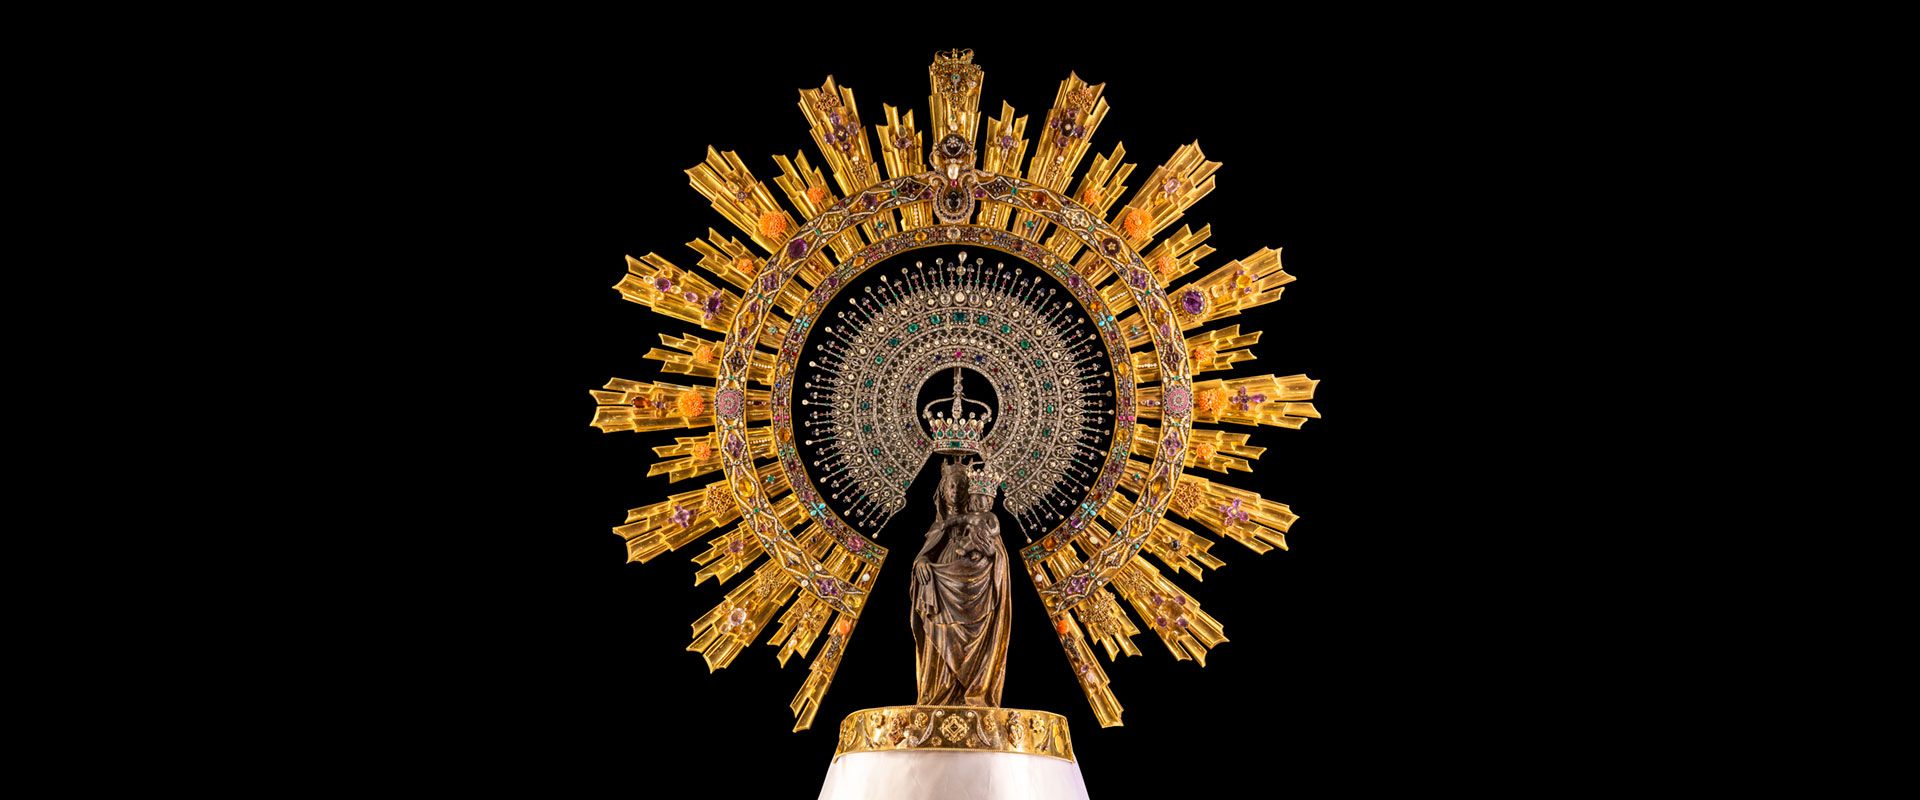 Imagen de Nuestra Señora del Pilar Catedrales de Zaragoza Crédito Catedral de Zaragoza